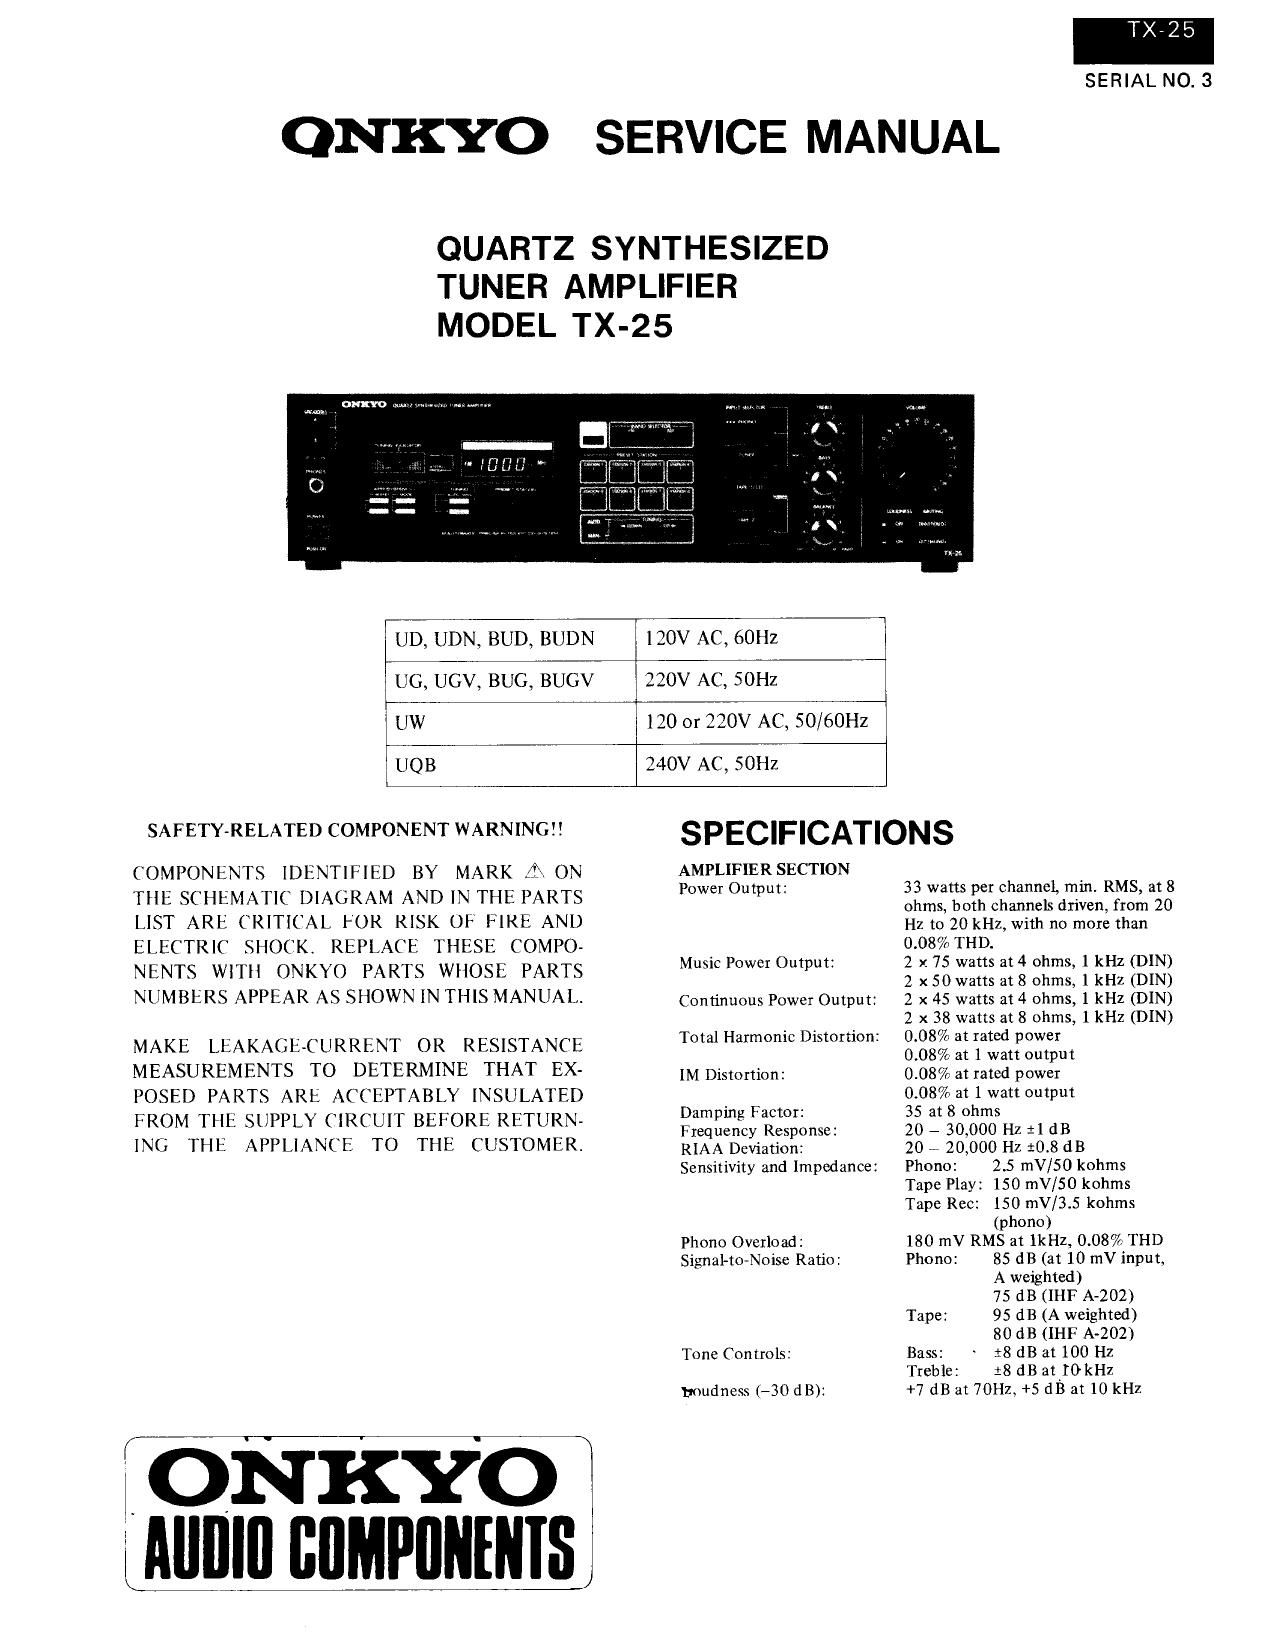 Onkyo TX 25 Service Manual